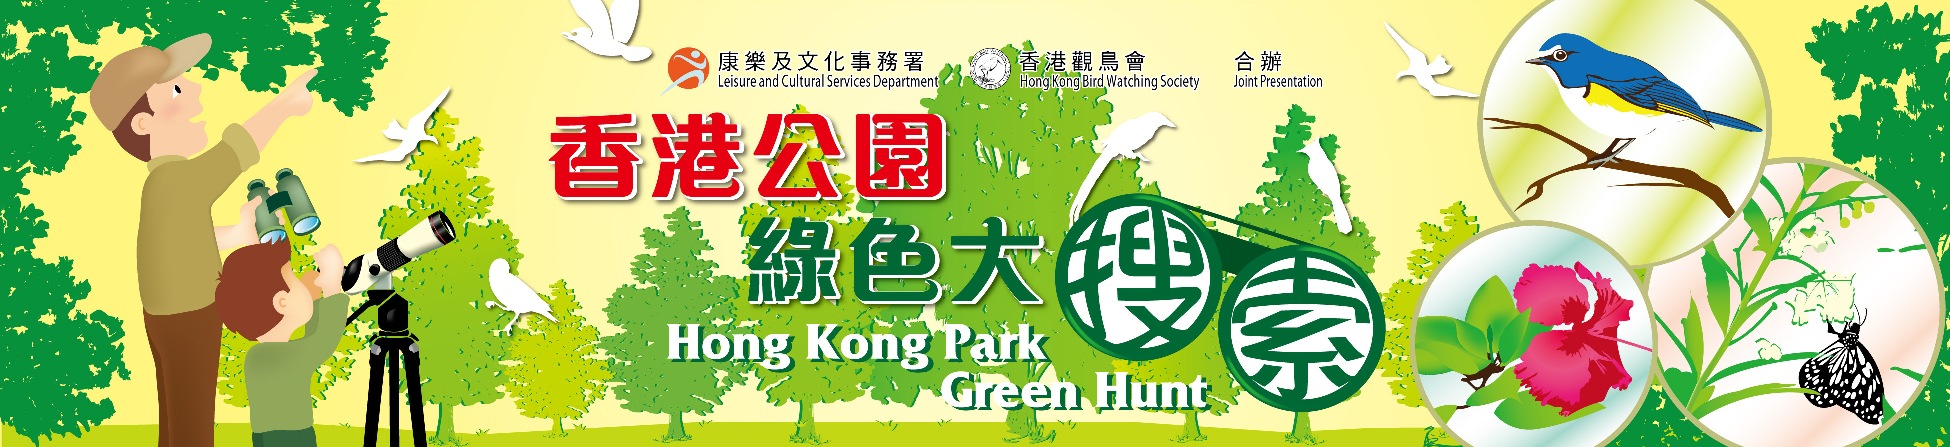 2014/15 香港公园绿色大搜索